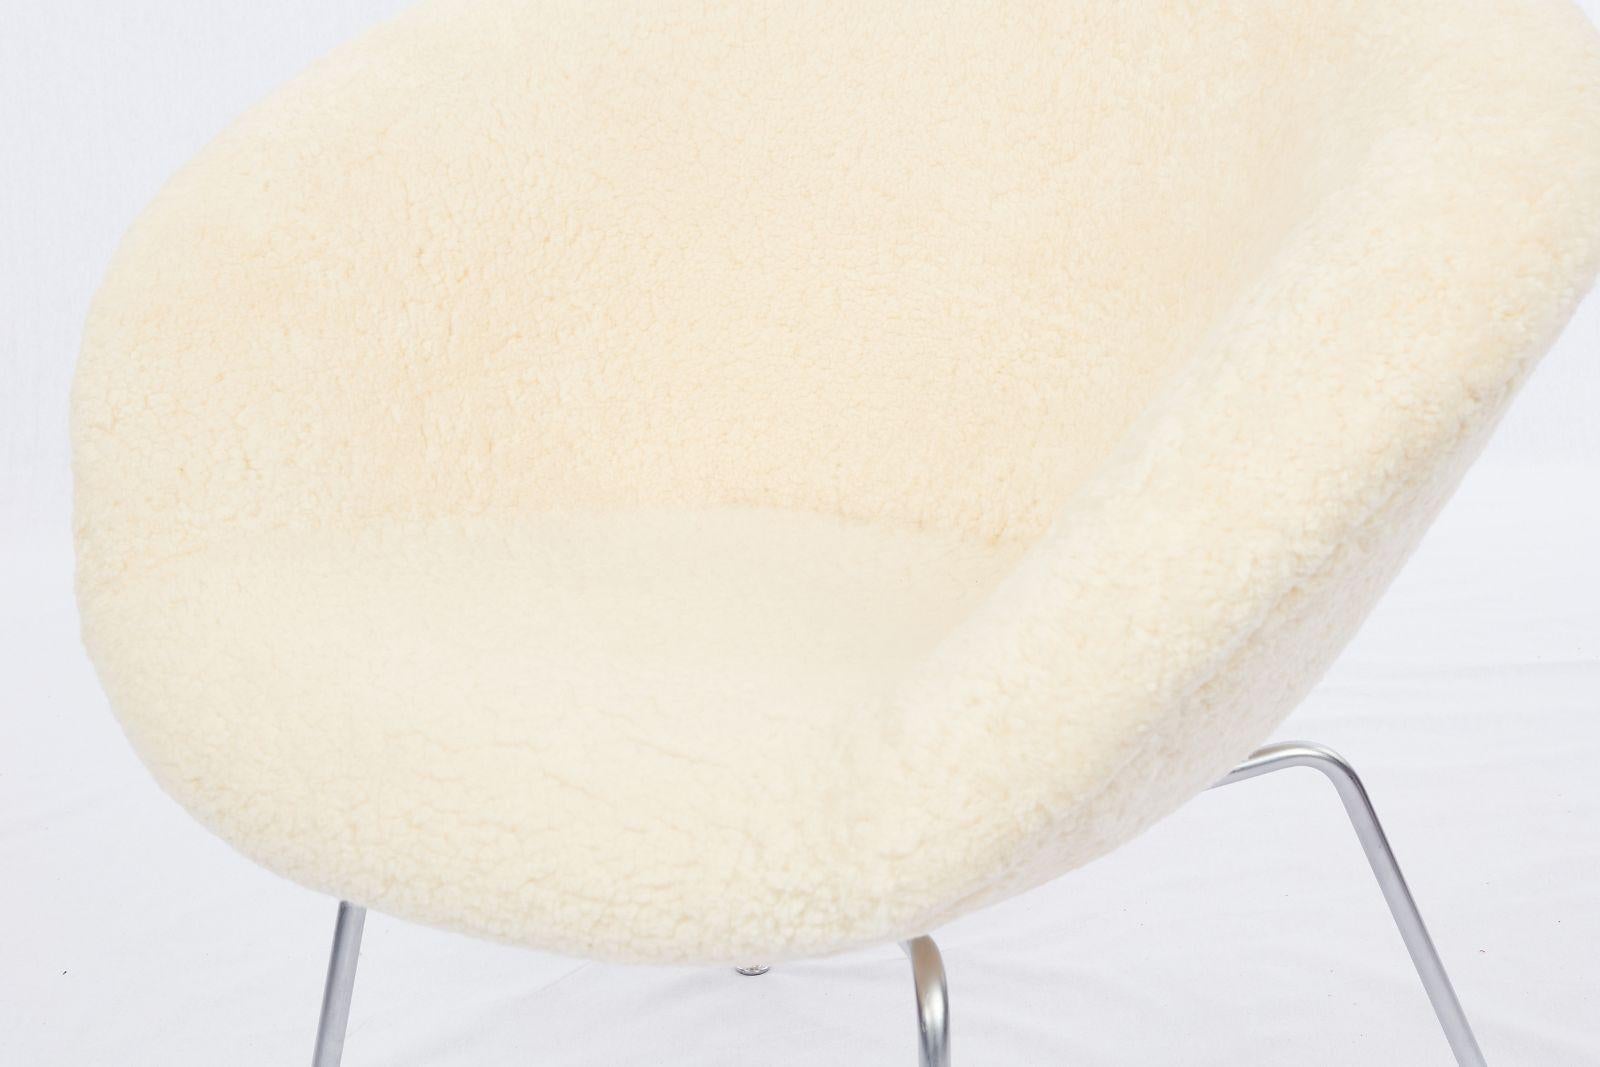 Arne Jacobsen Pot Chair Upholstered in Sheepskin For Sale 2